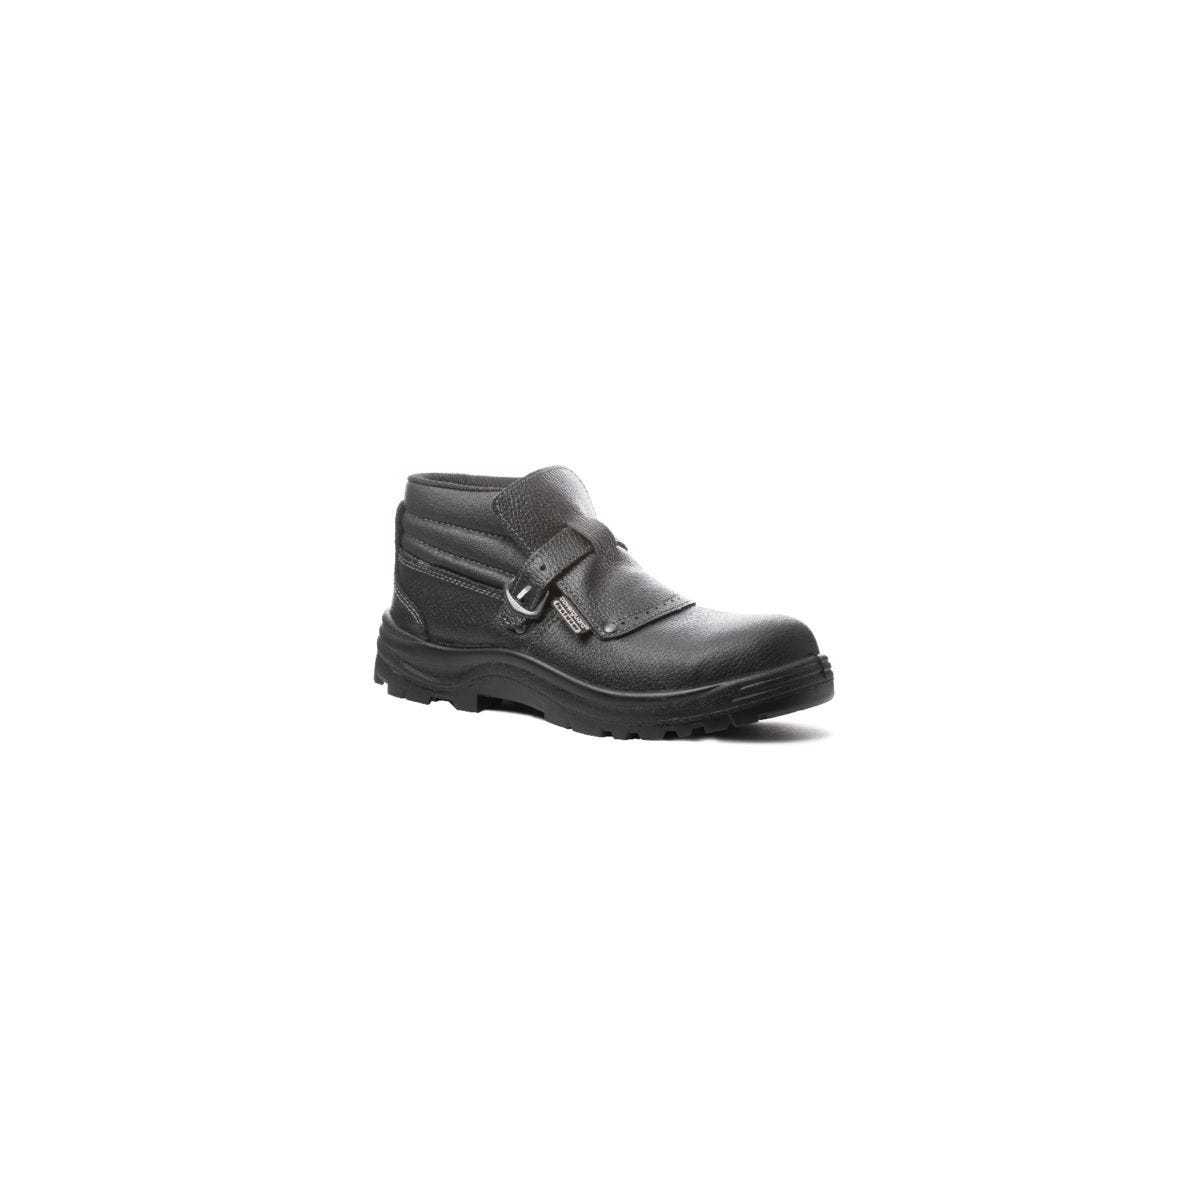 Chaussure de sécurité QUARTZ S3 composite soudeur Noir - COVERGUARD - Taille 46 0